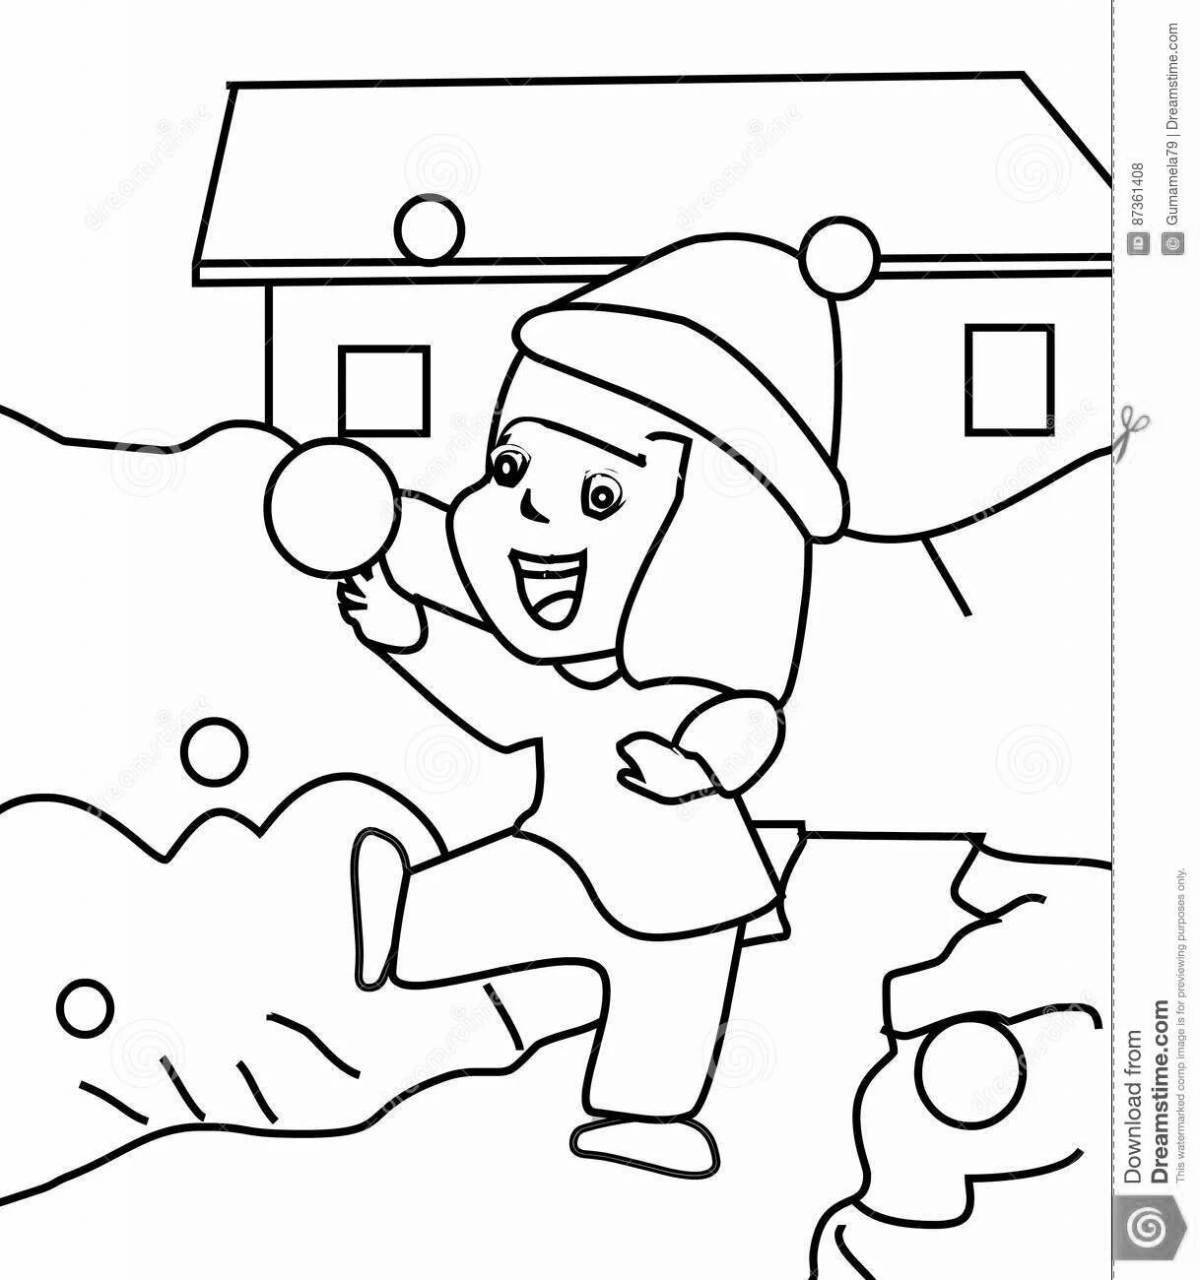 Увлекательная раскраска «бой в снежки» для детей